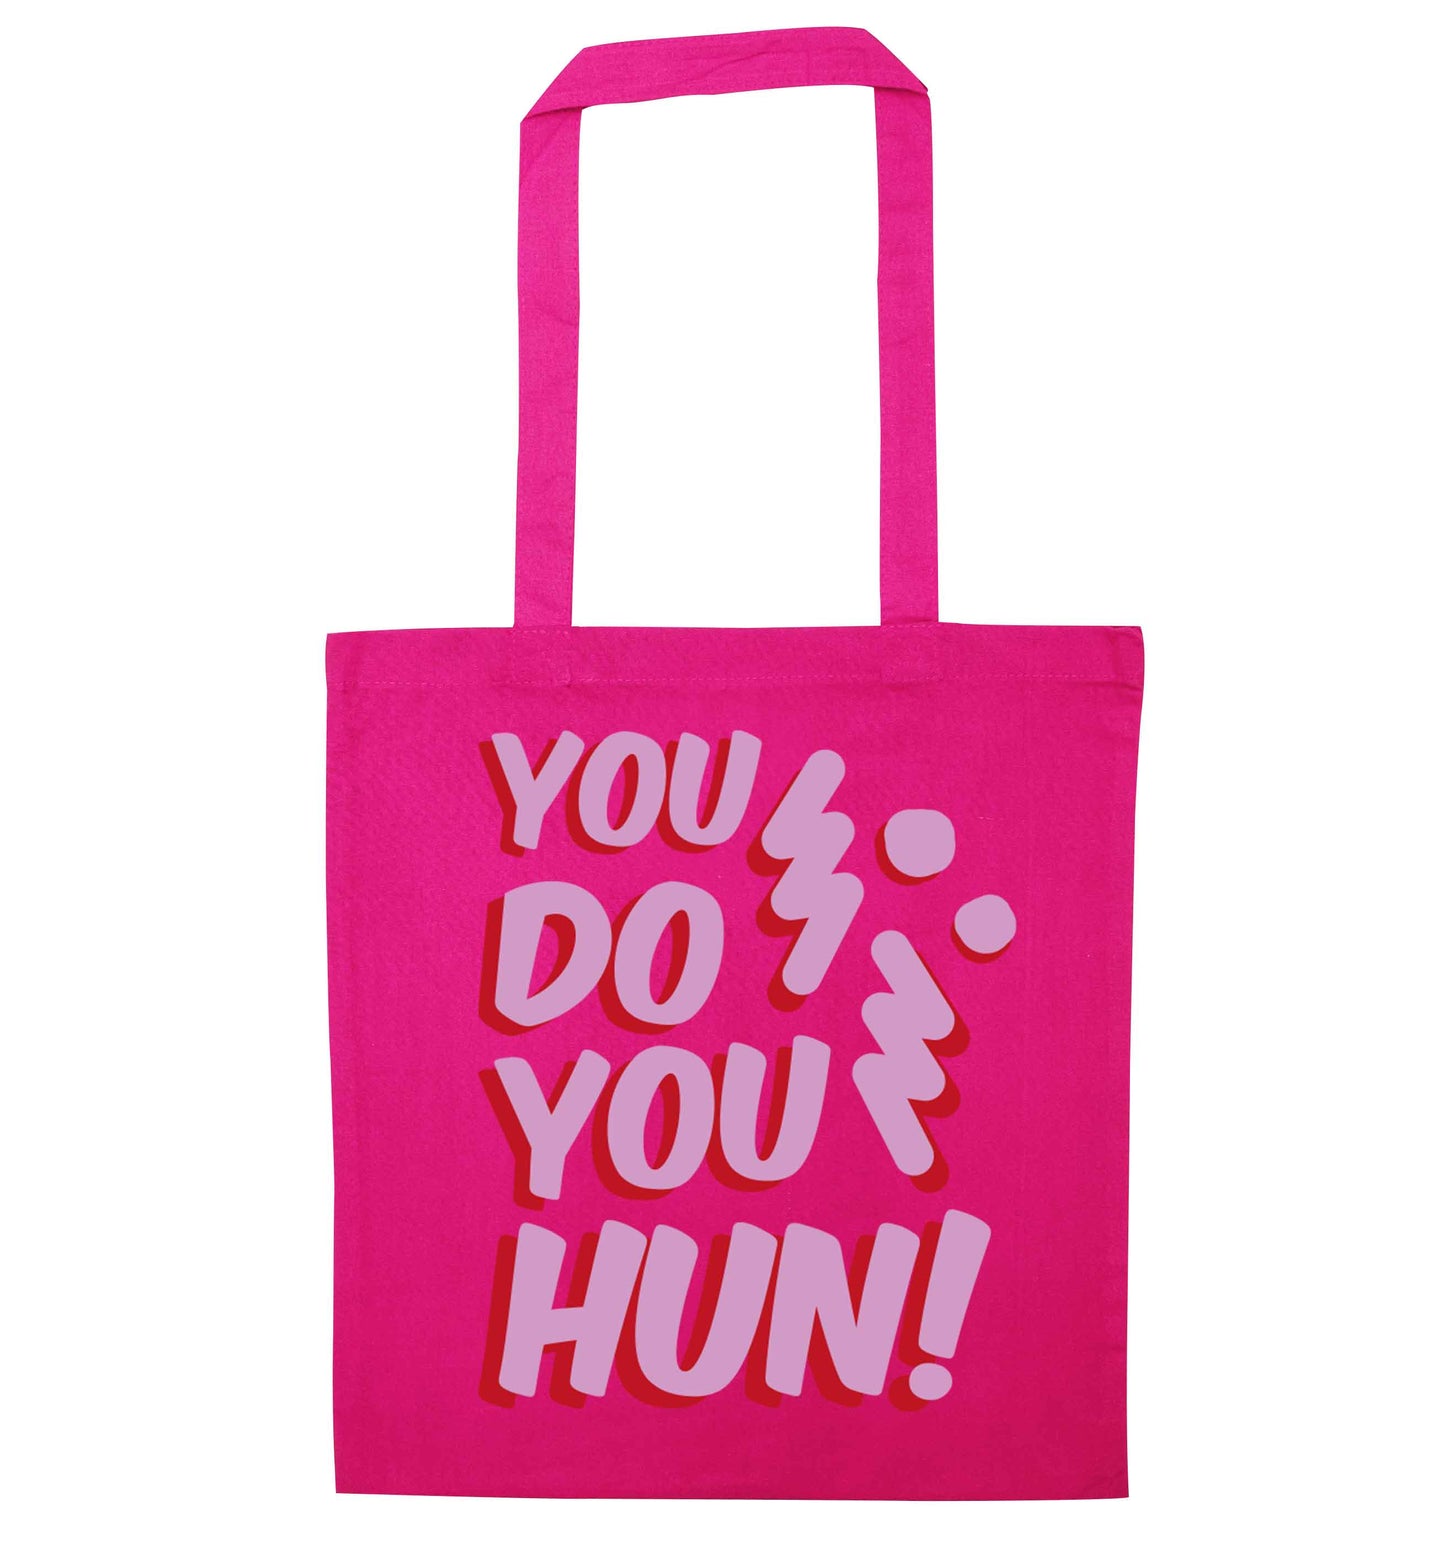 You do you hun pink tote bag